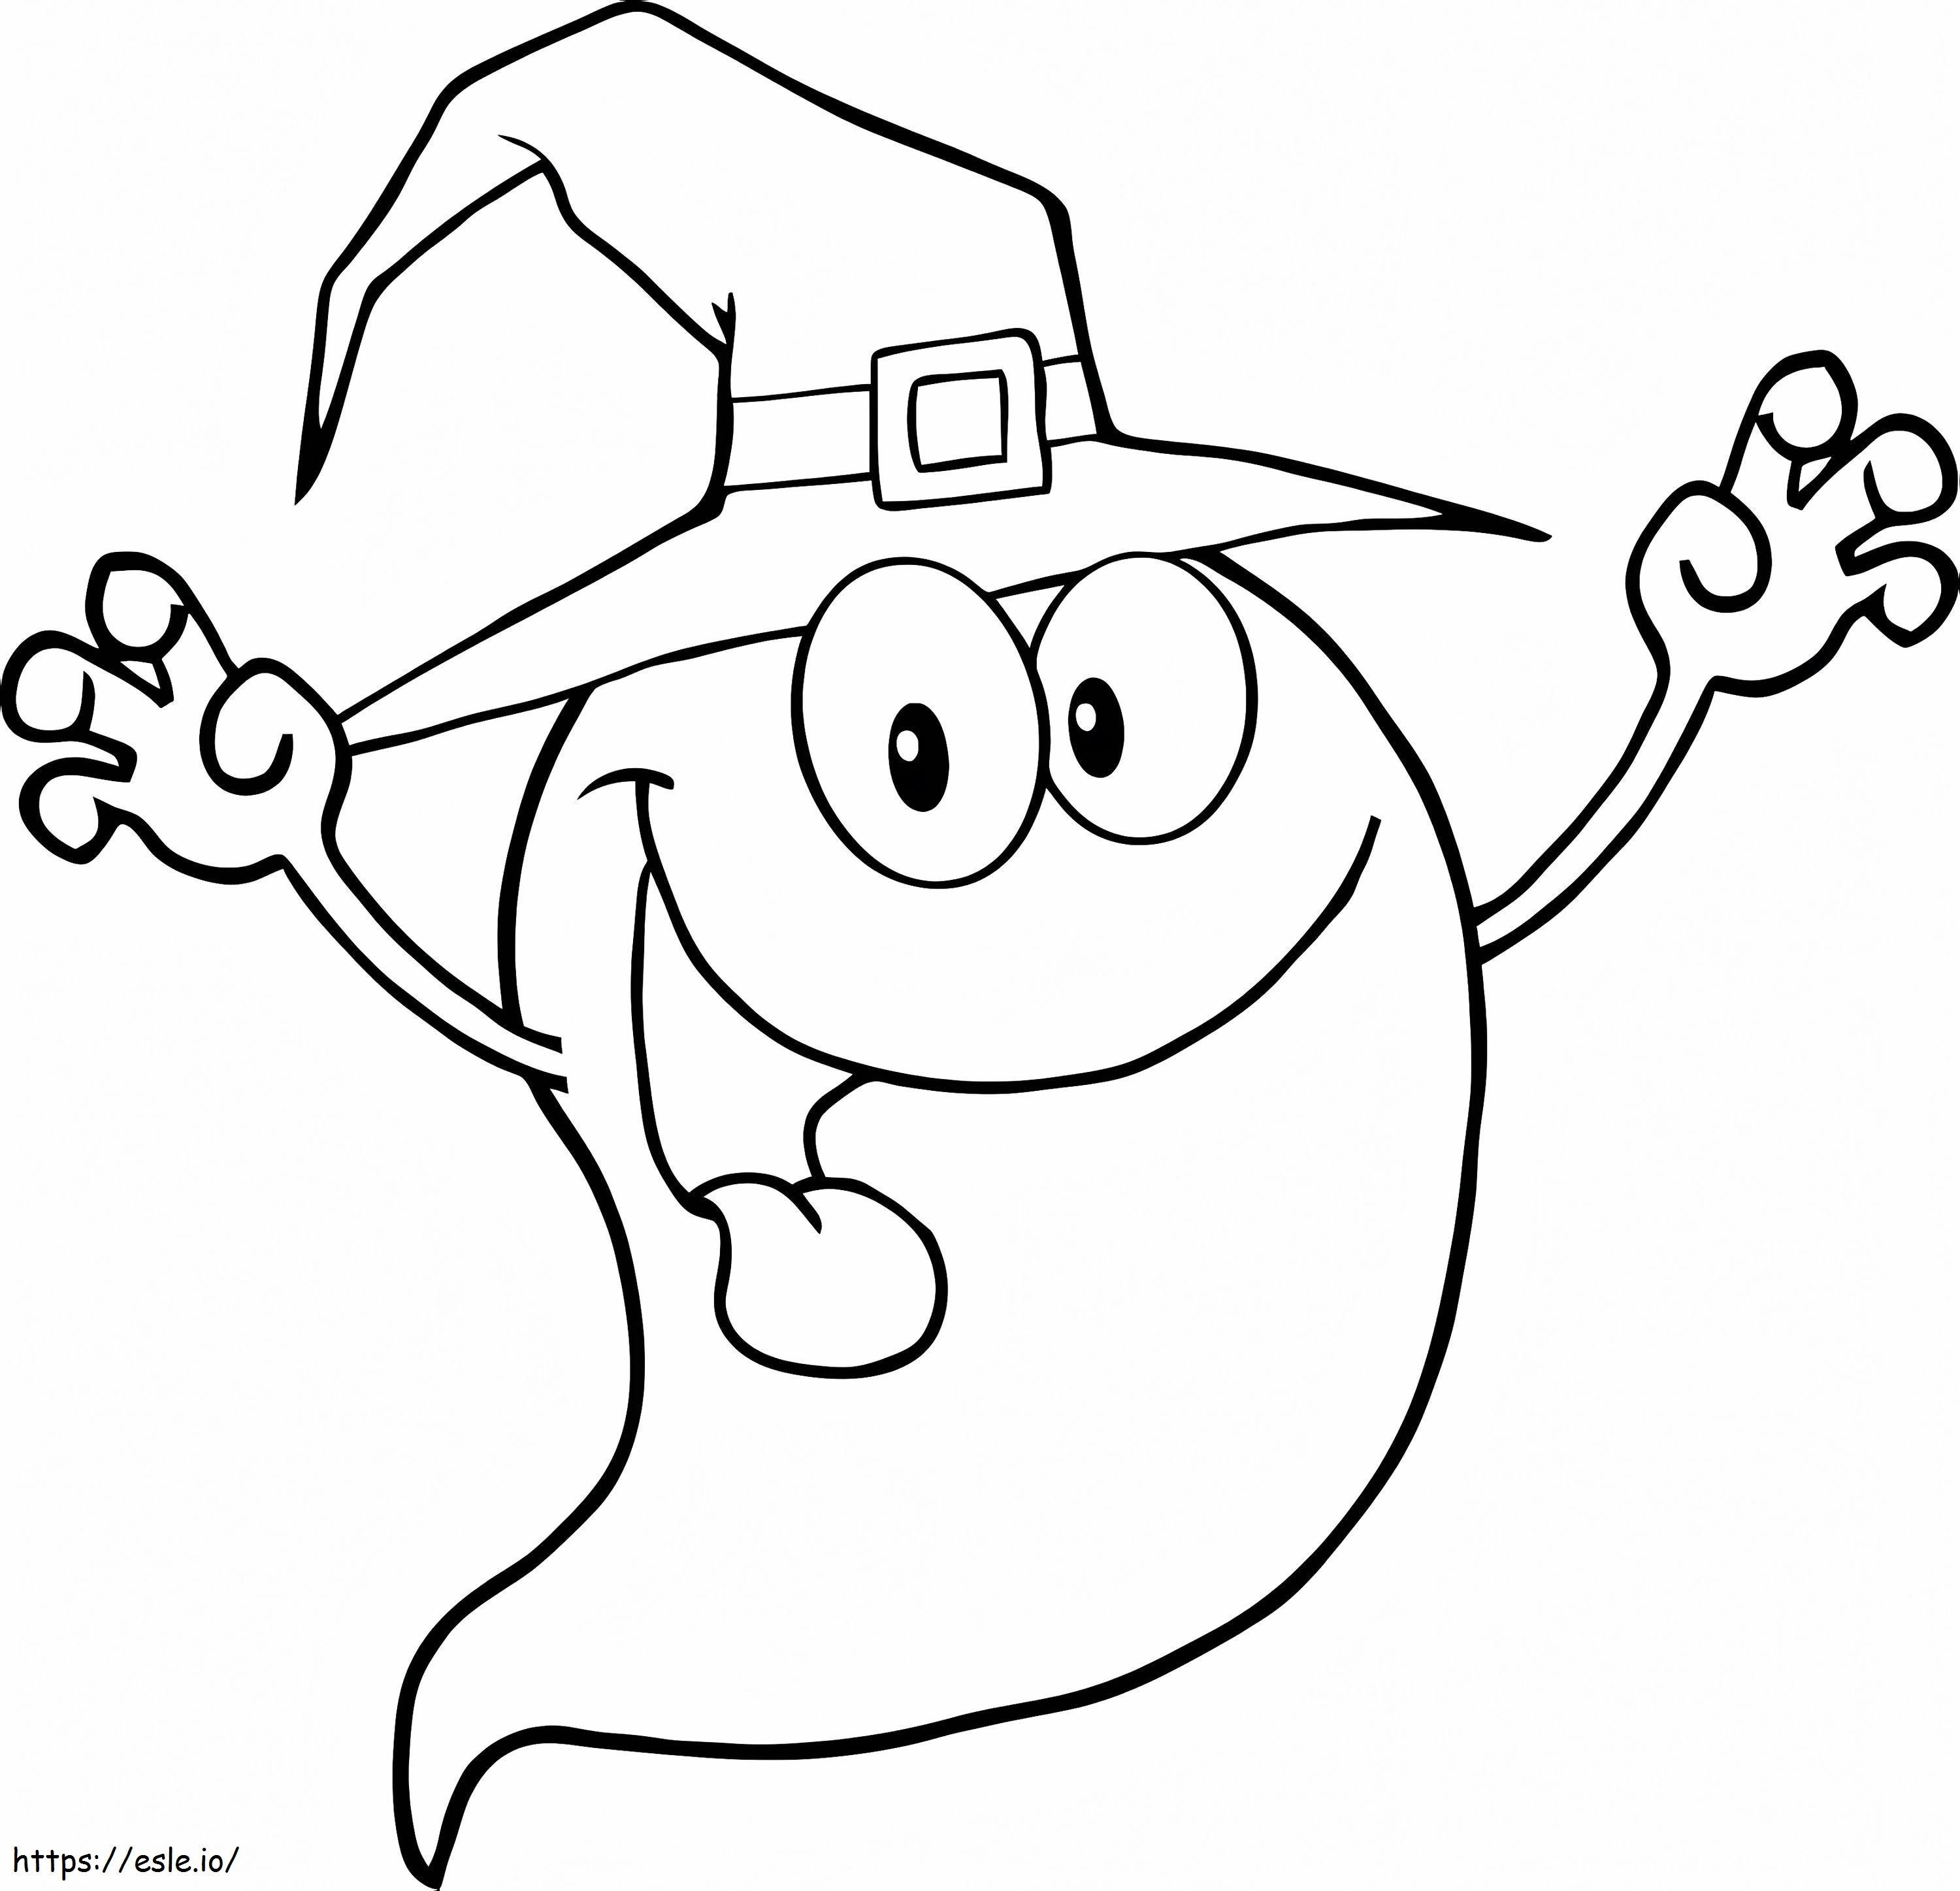 Personaje de dibujos animados de fantasma de Halloween aterrador para colorear